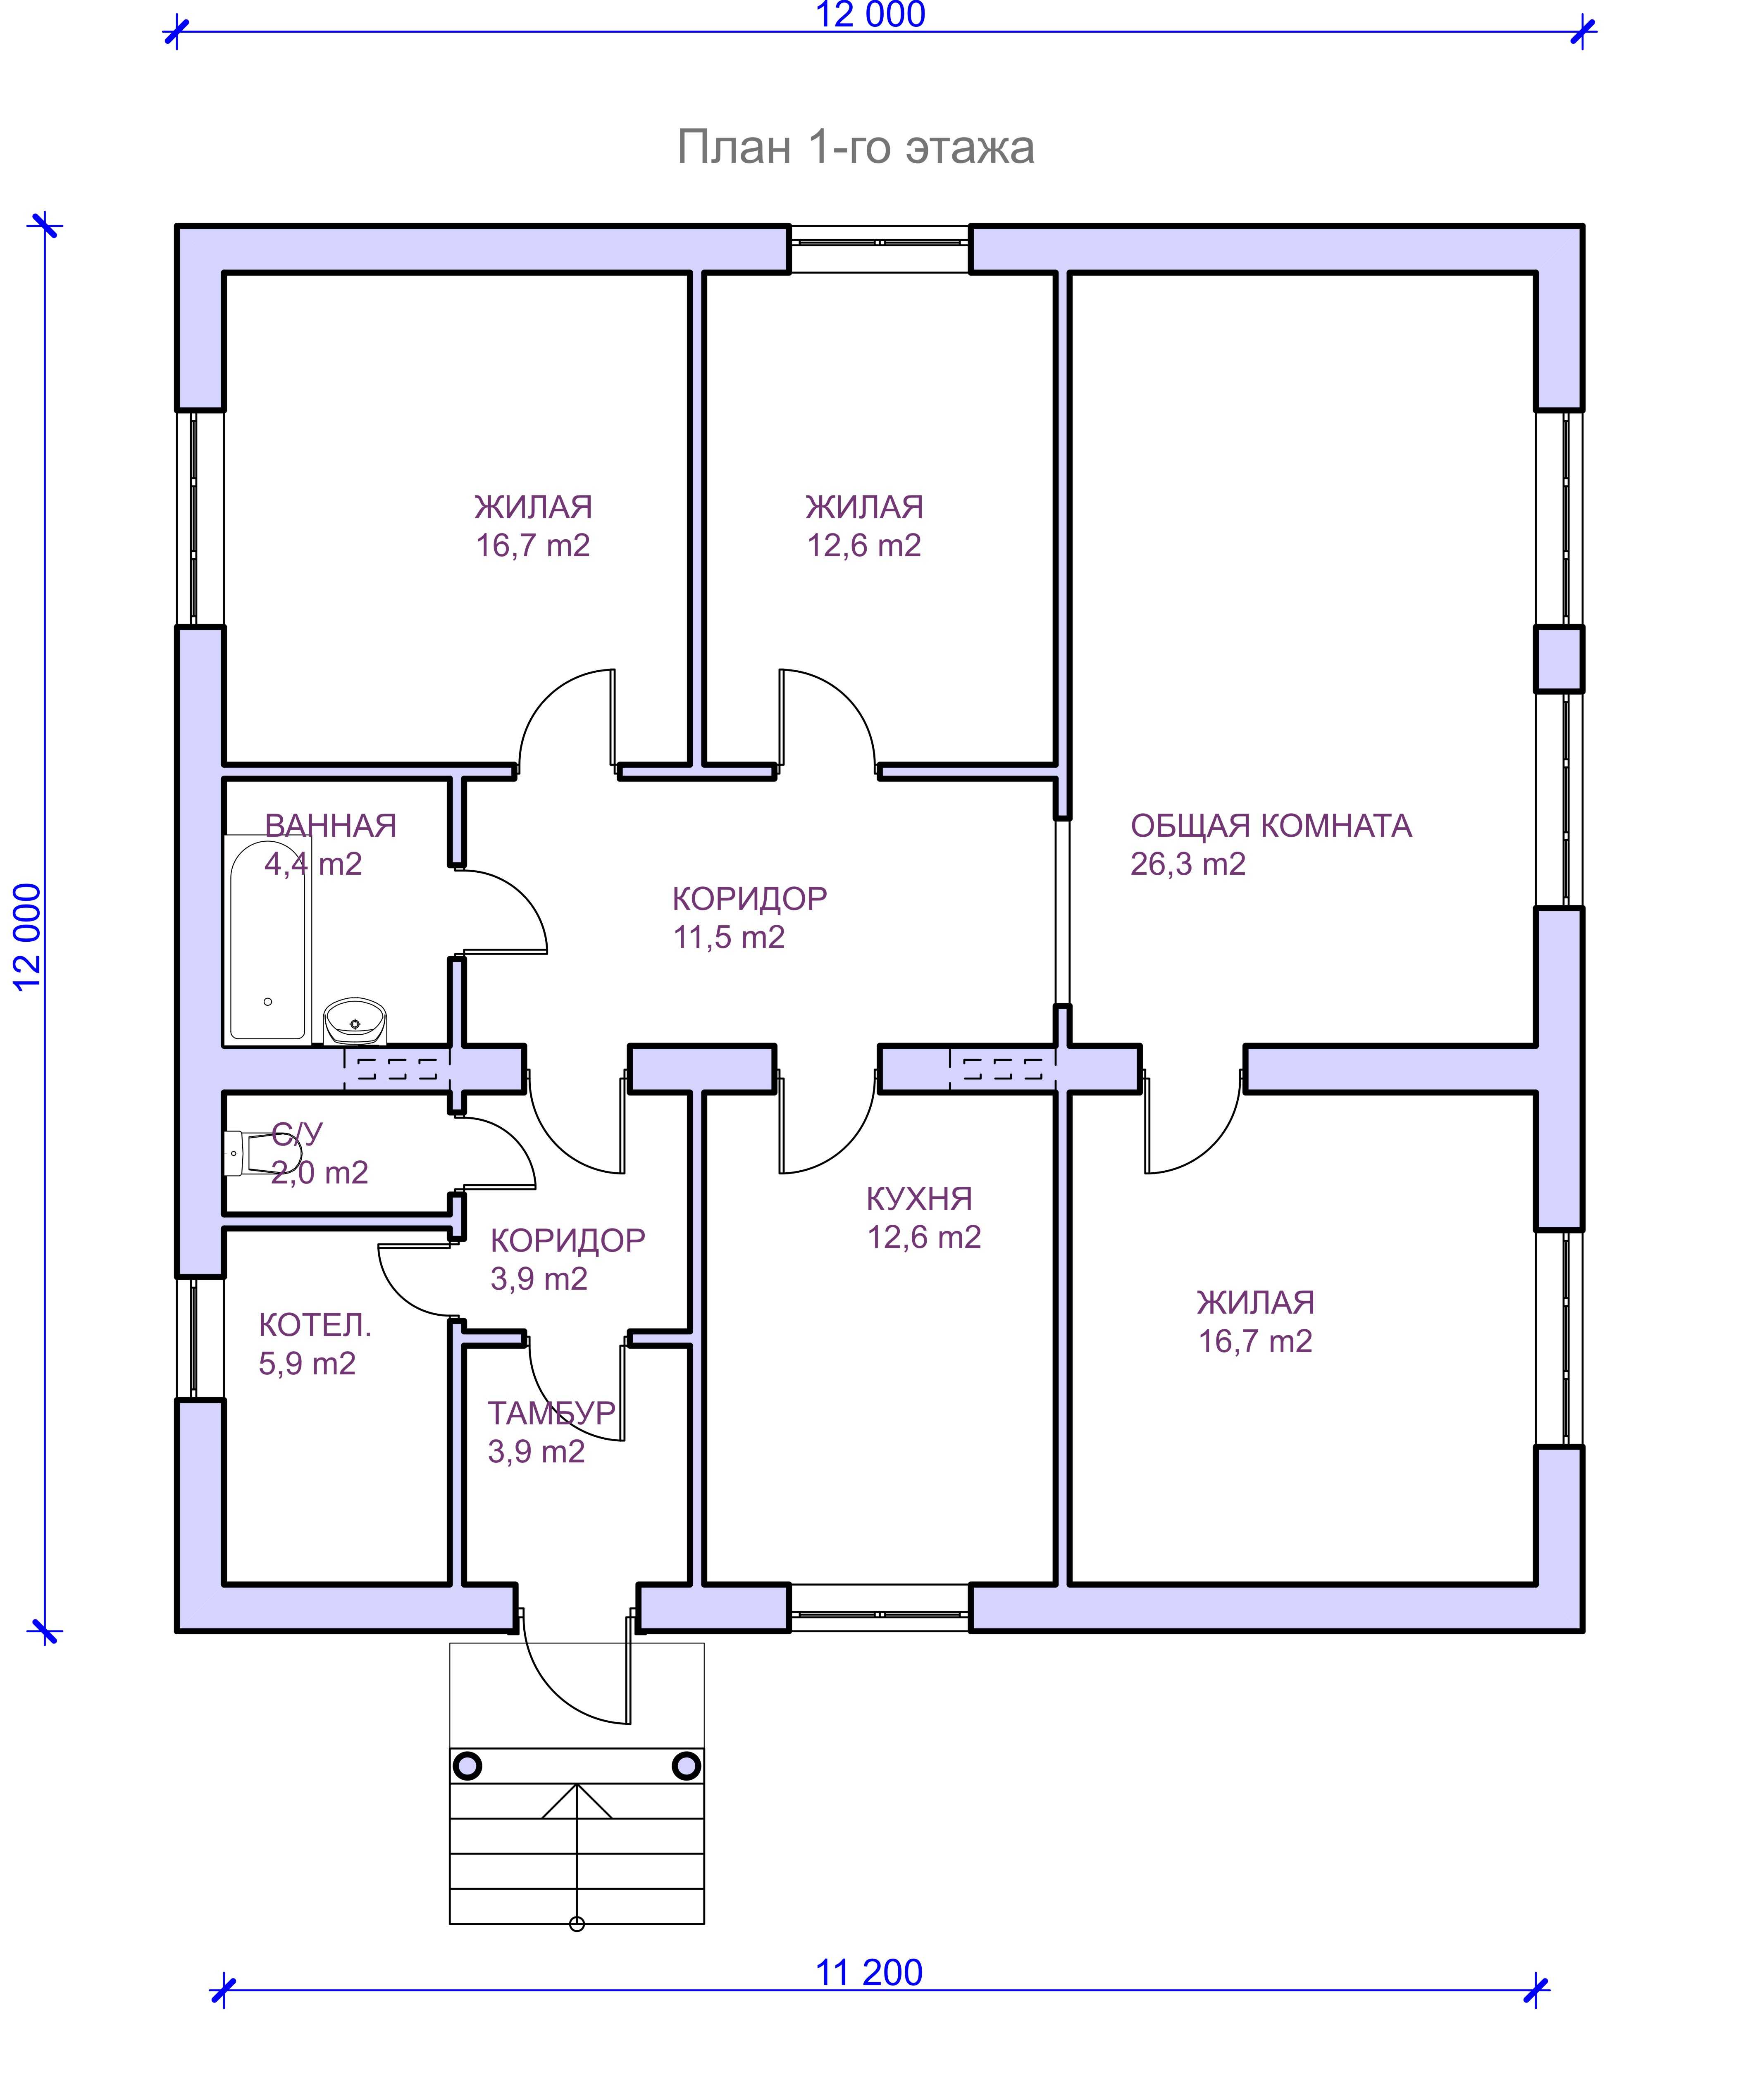 Планировка и расположение комнат в частном доме